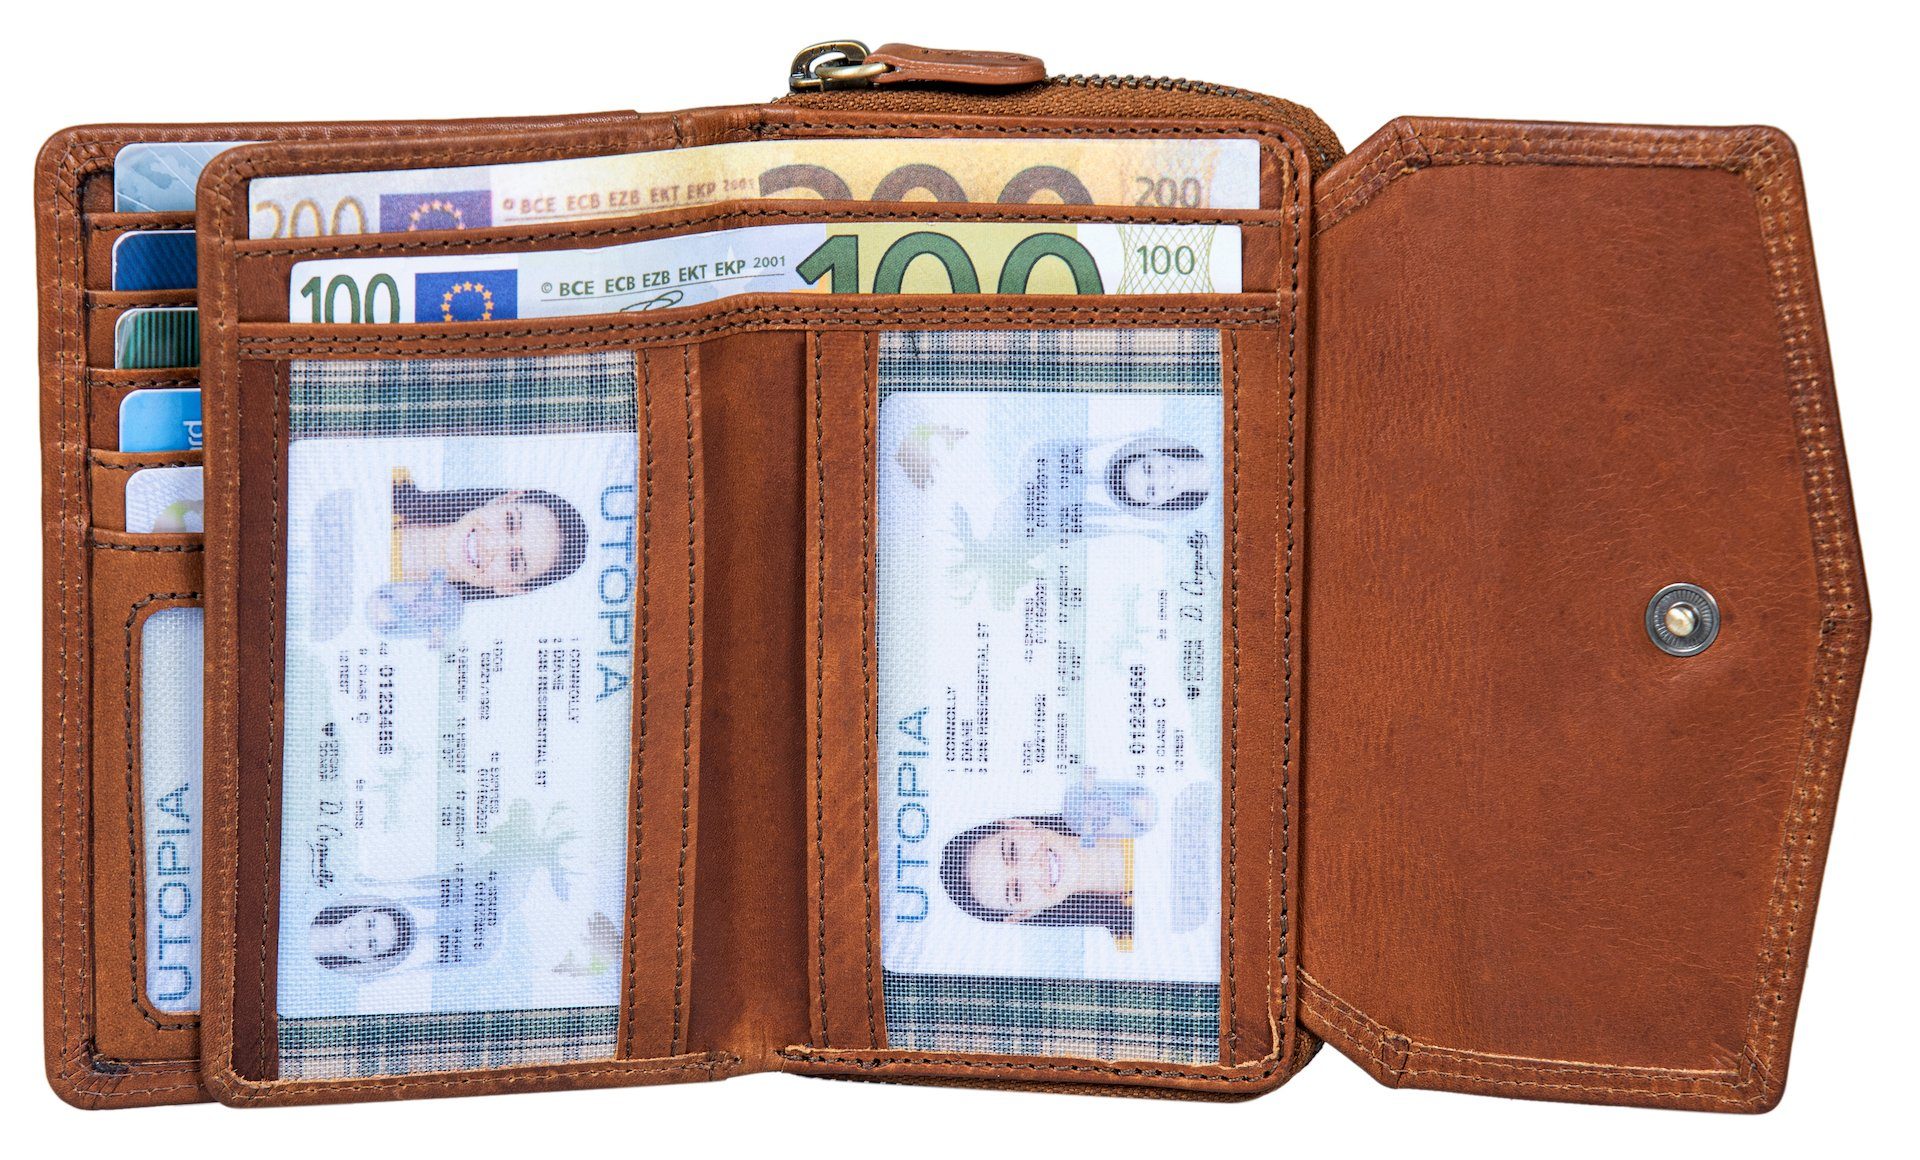 Benthill Geldbörse Damen Portemonnaie Kartenfächer Echt Leder RFID-Schutz Vintage Braun Reißverschlussfach Münzfach Kreditkartenetui, Portmonee